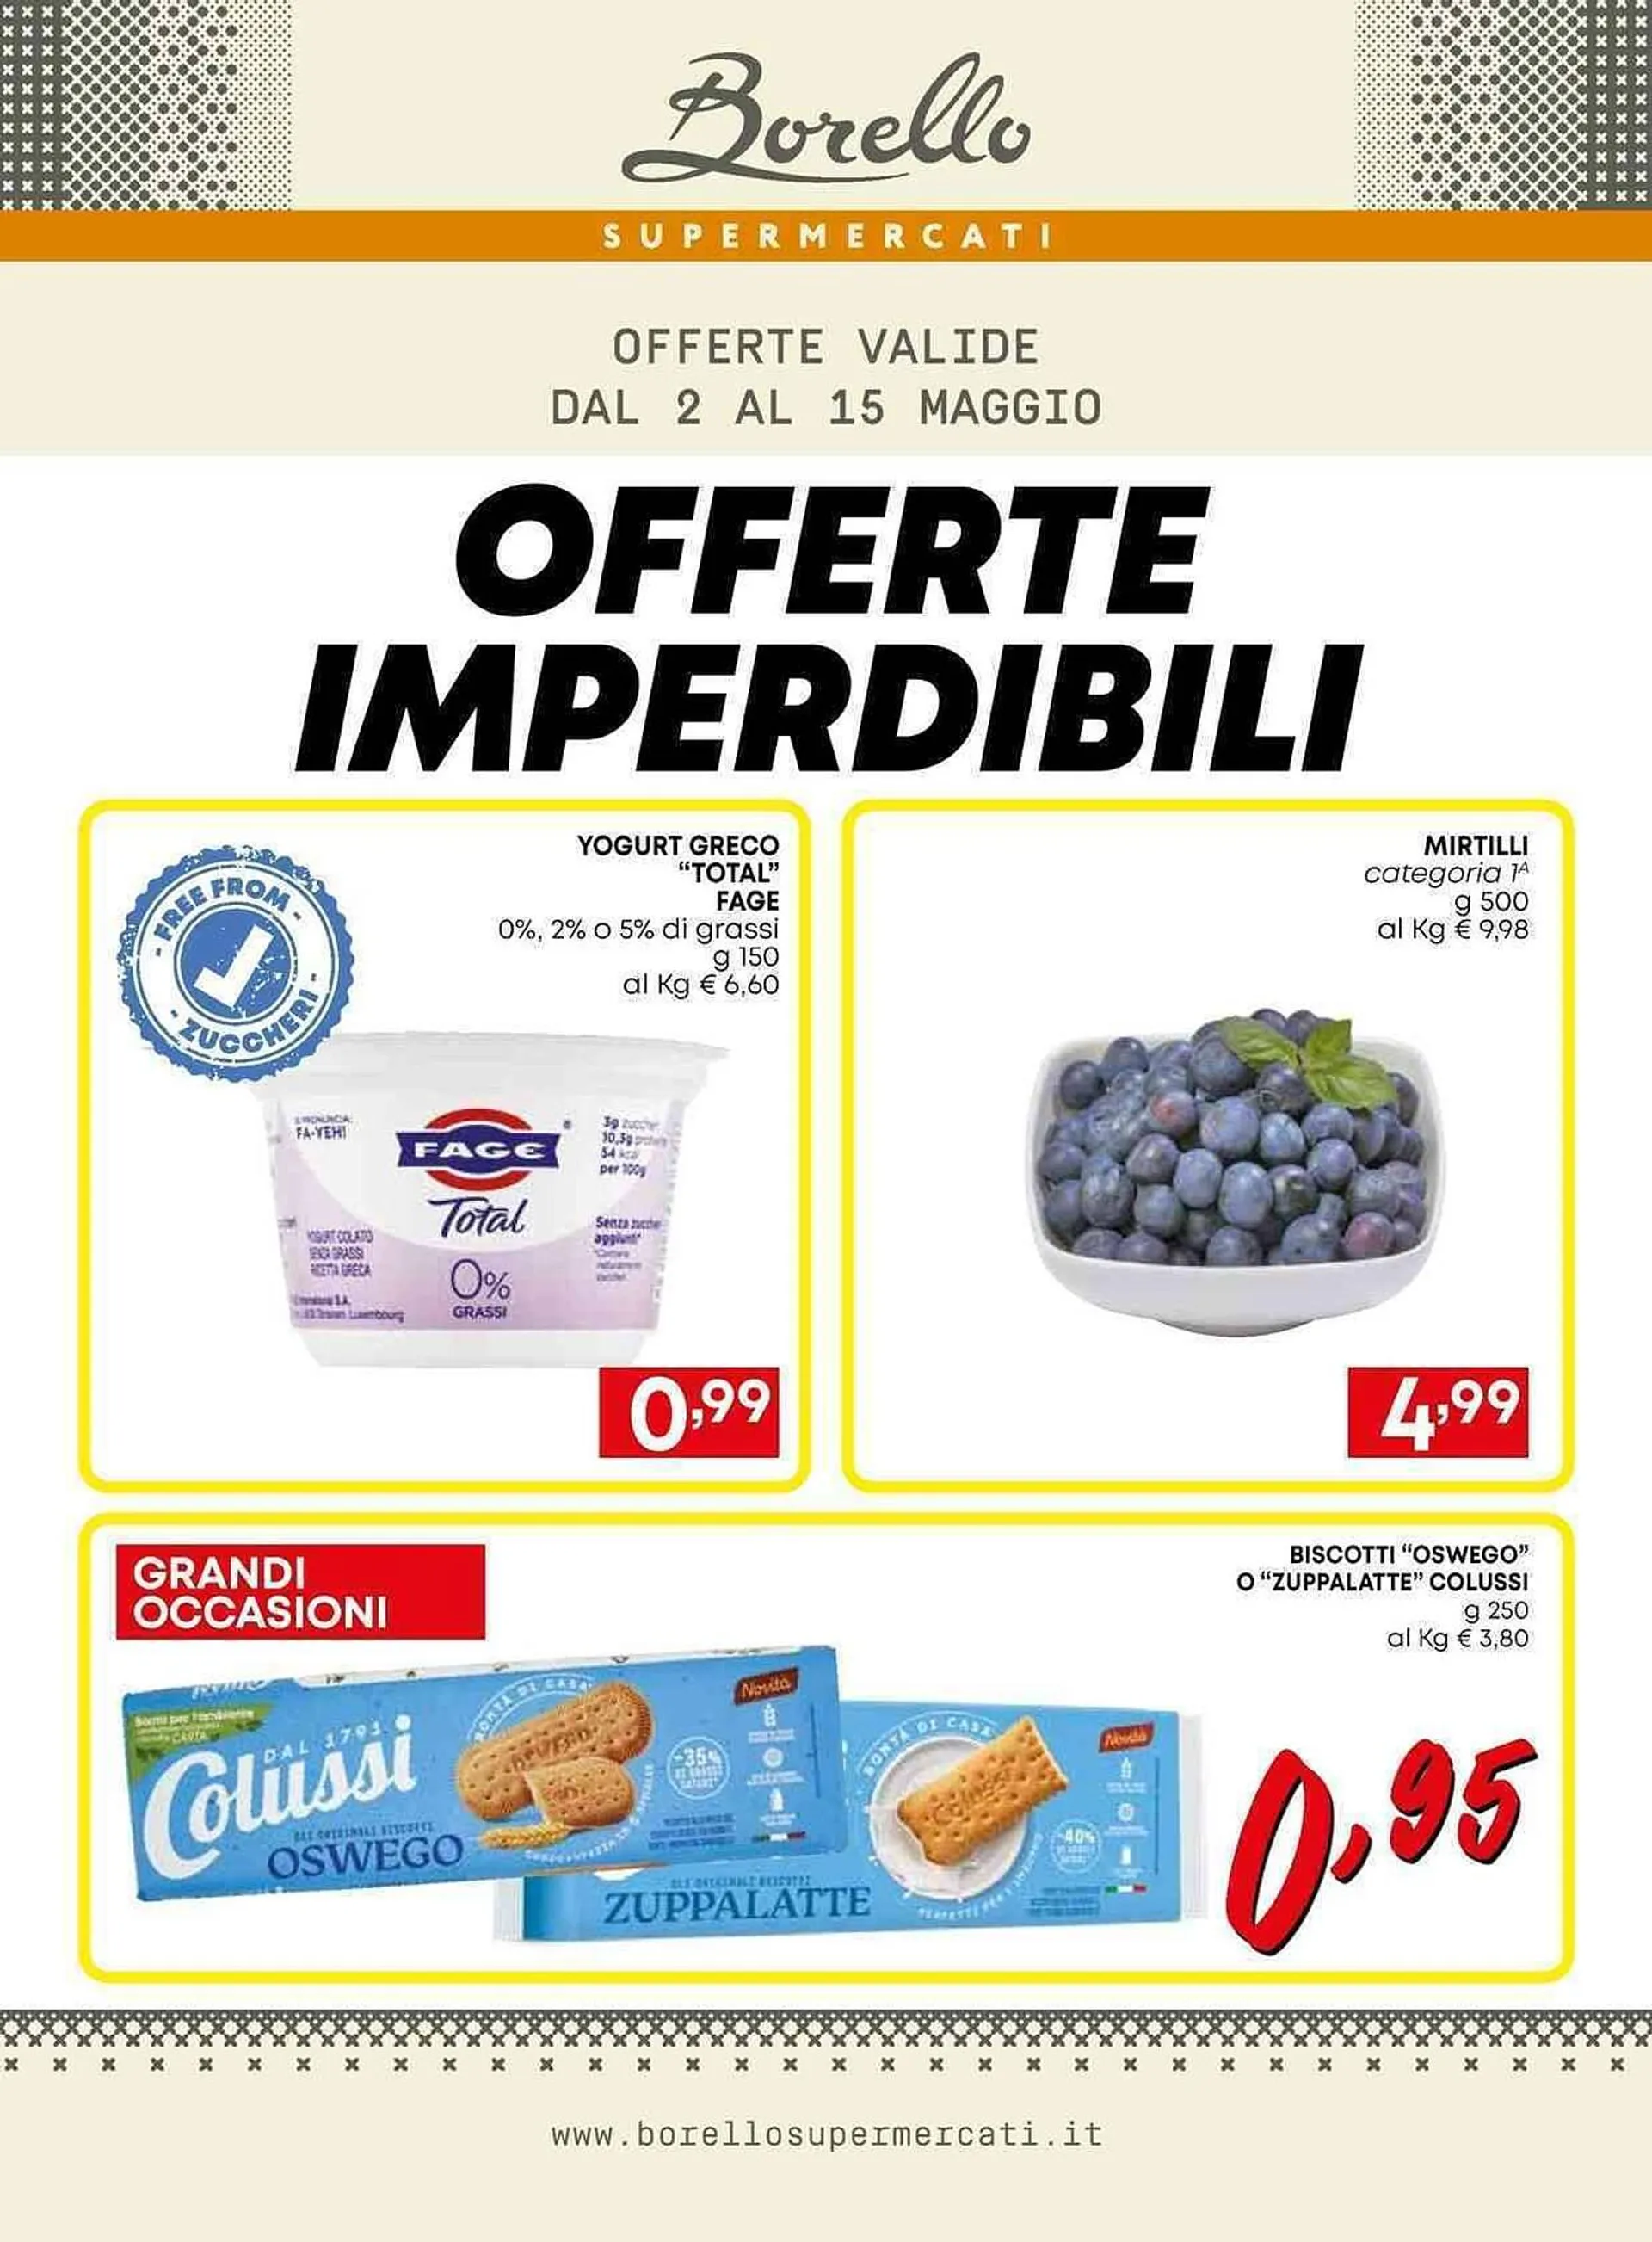 Volantino Borello Supermercati - 1